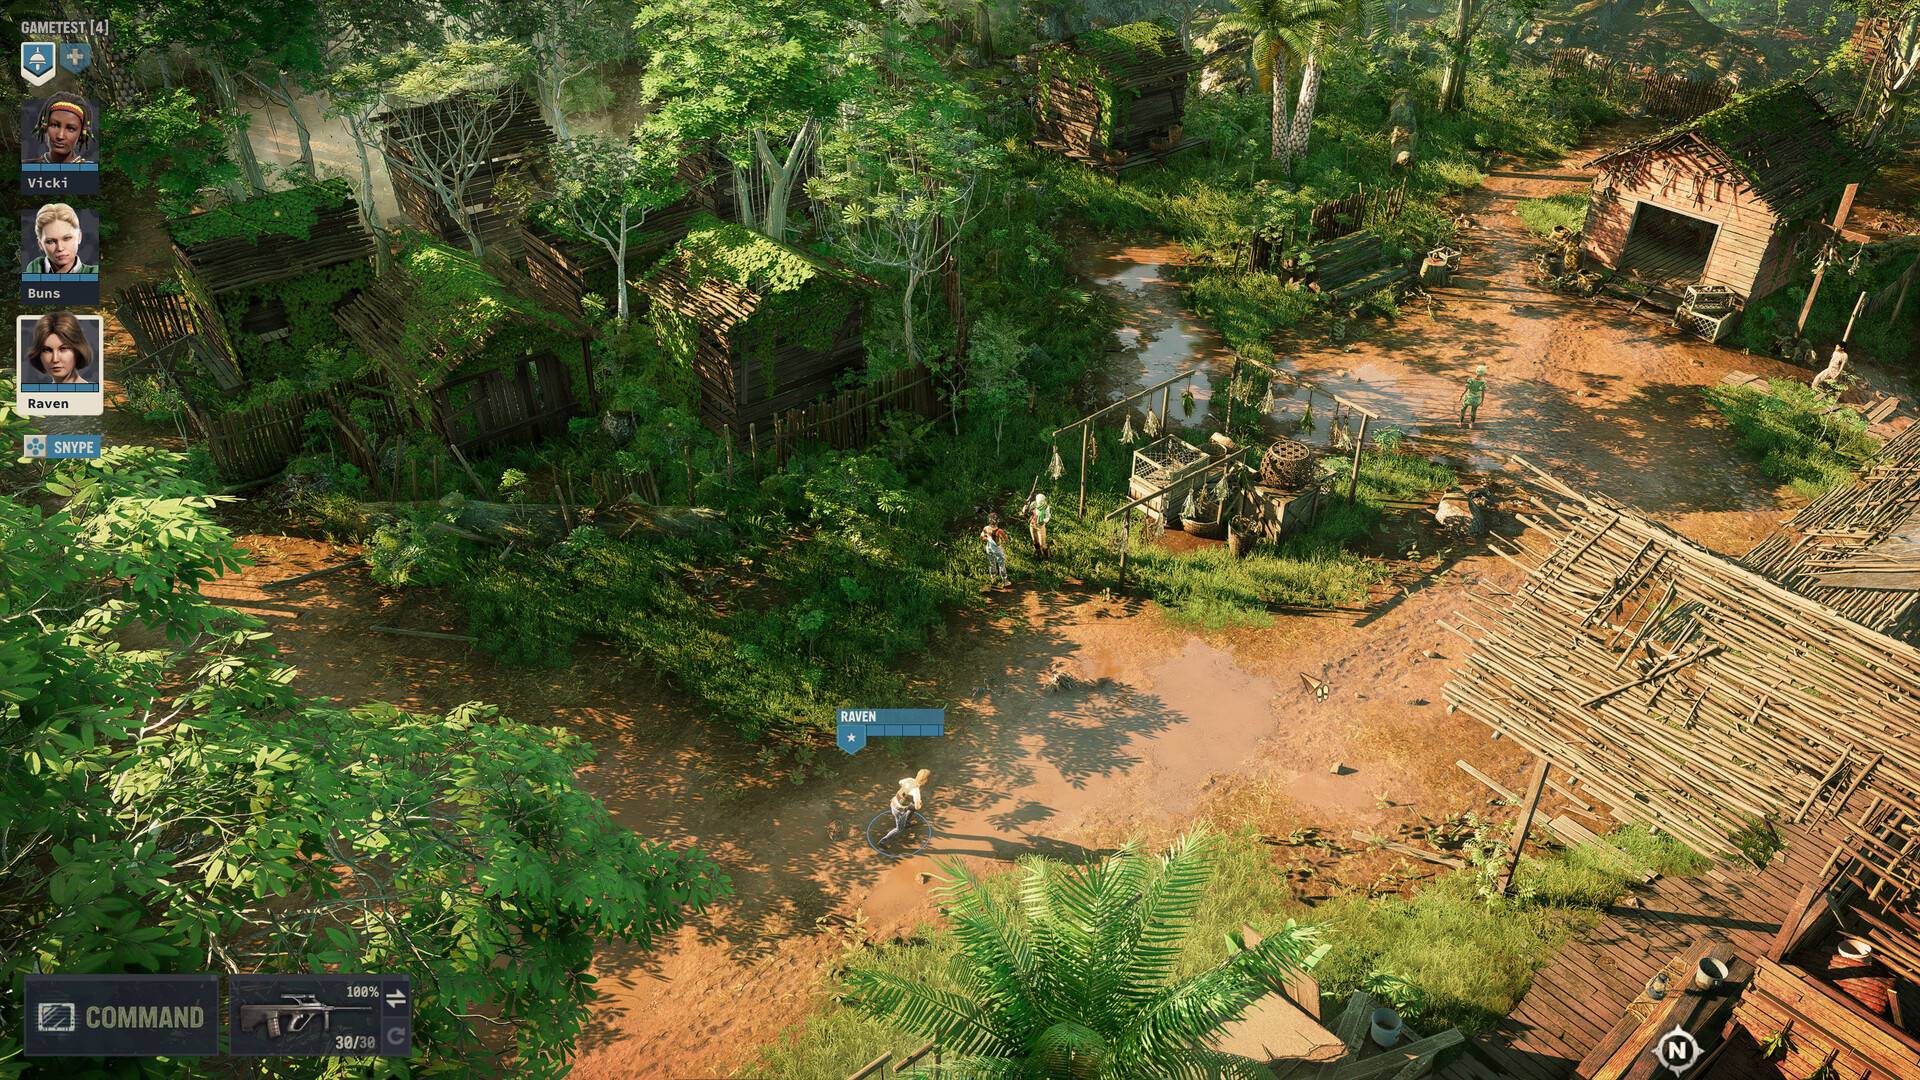 回合制战术游戏《铁血联盟3》宣布将与 7 月 14 日登陆 PC 平台发售！